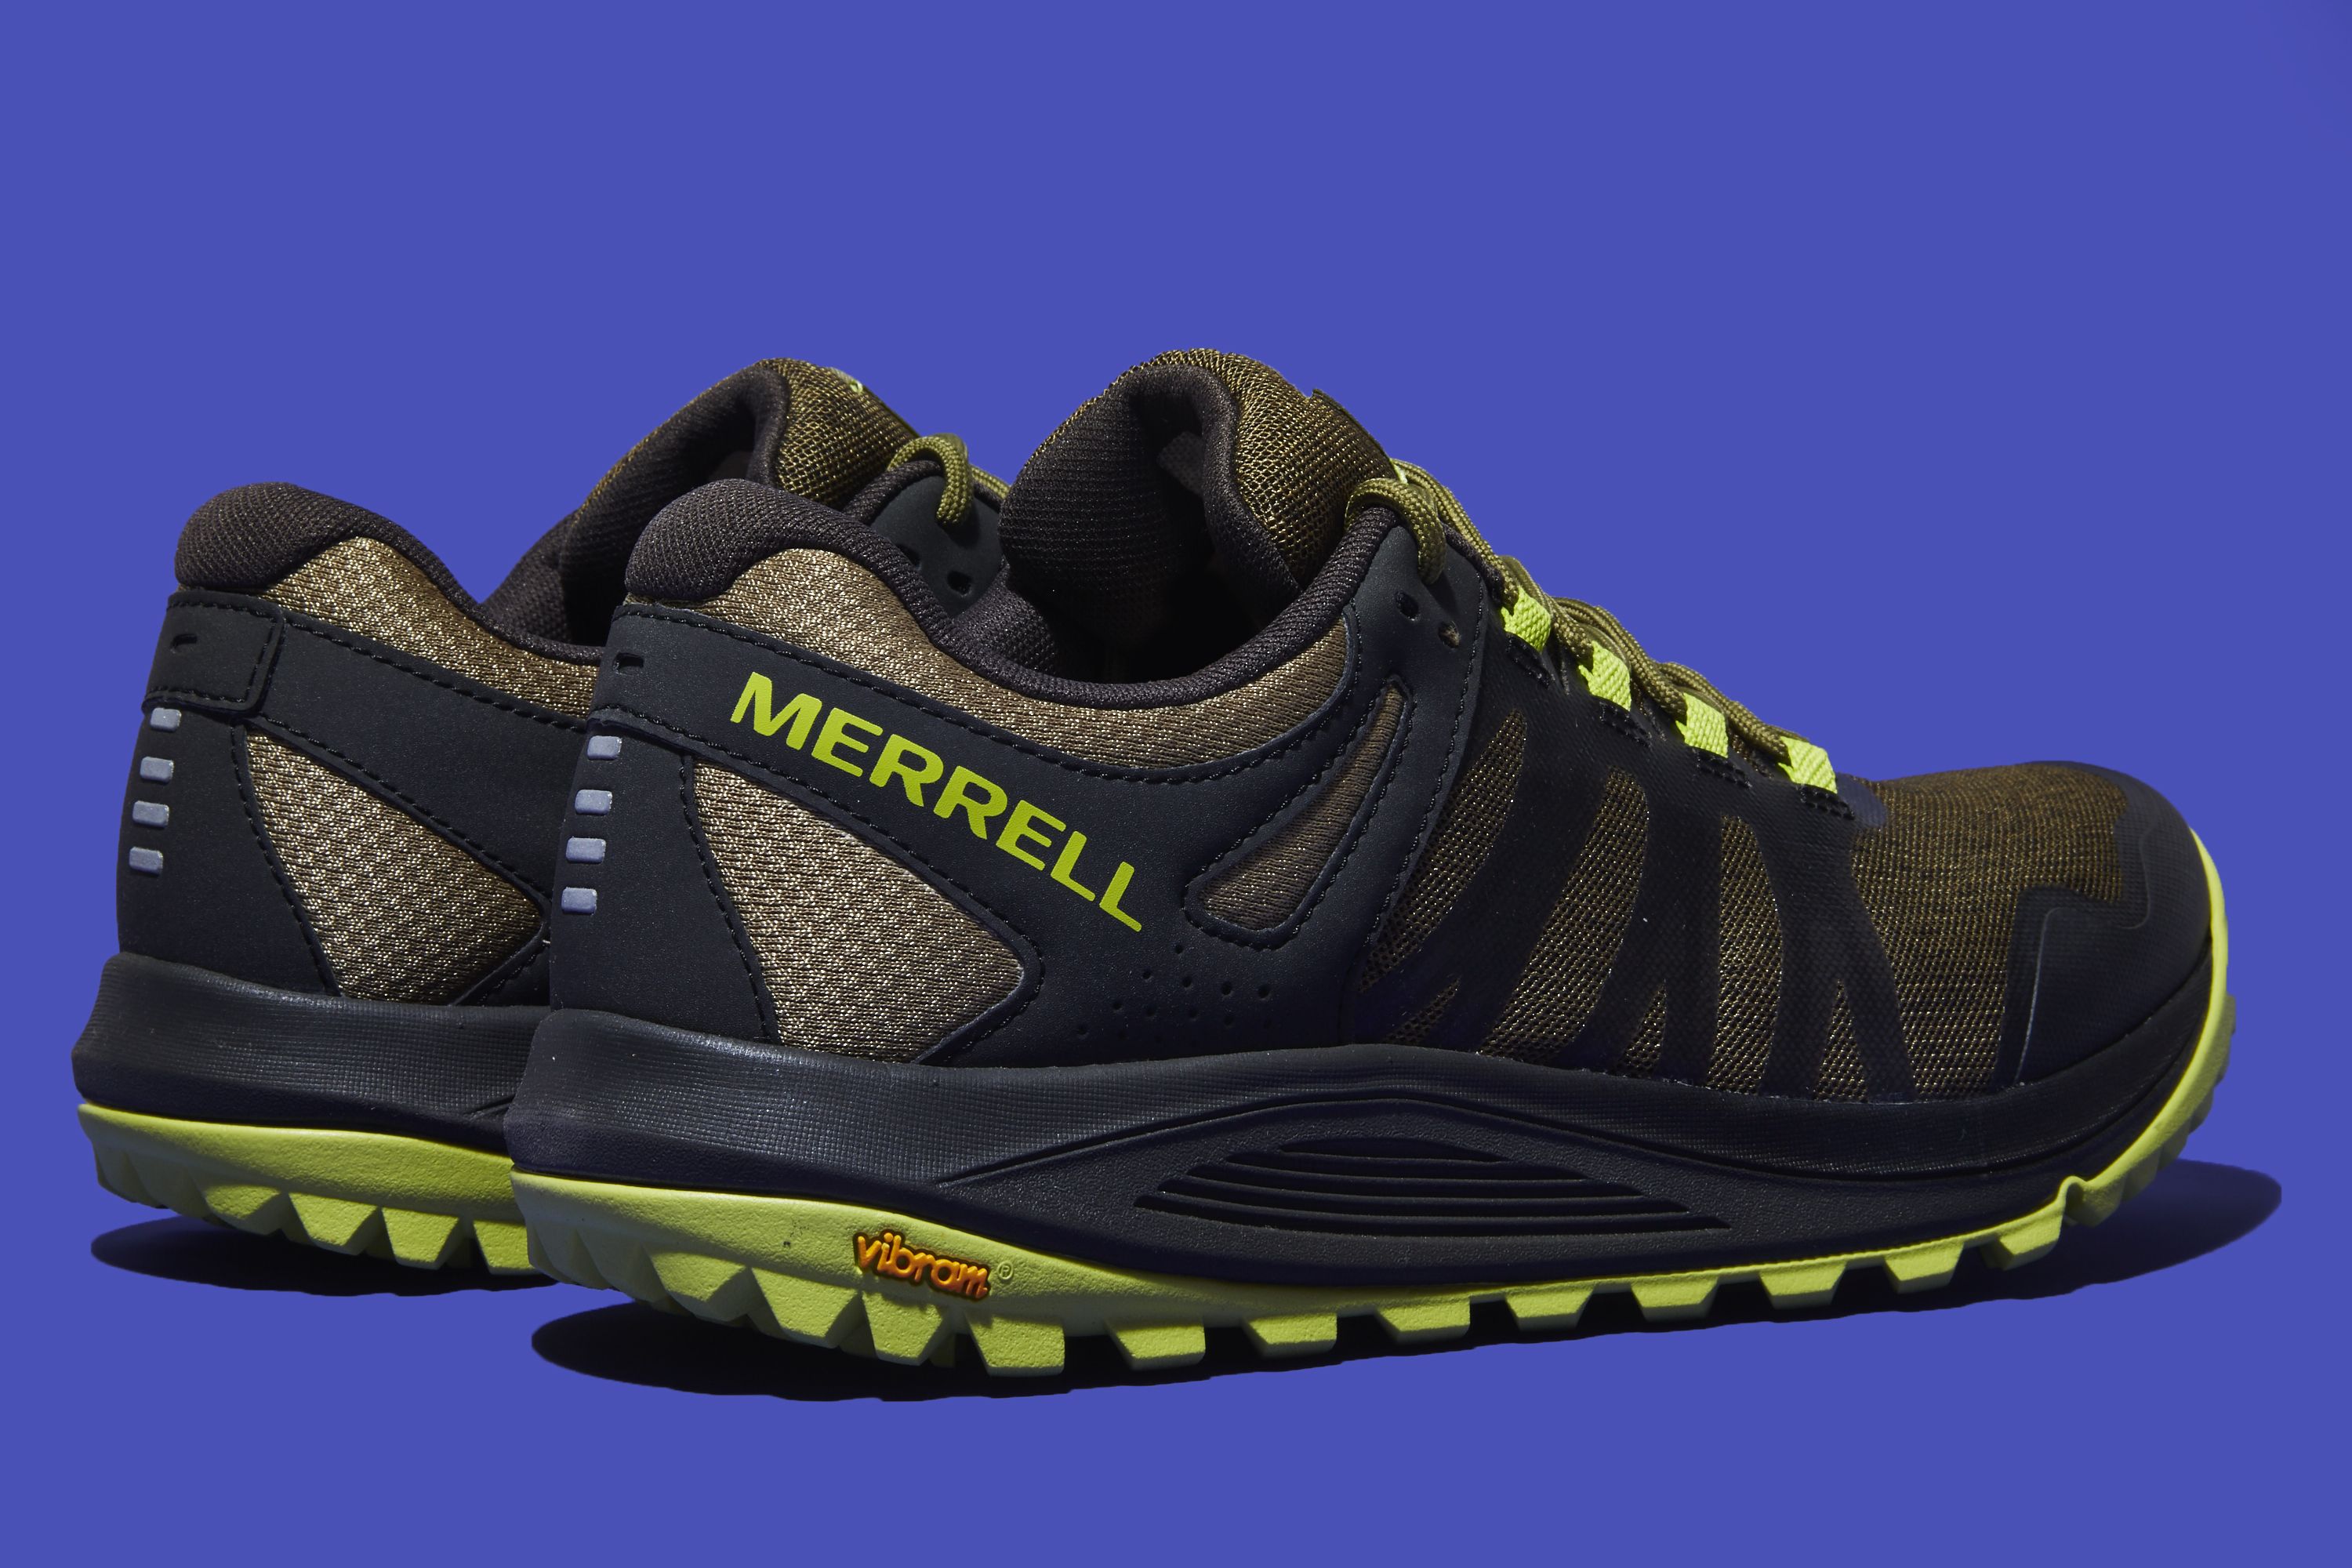 Merrell Nova Shoe Review 2019 | Best Trail Running Shoes for Men